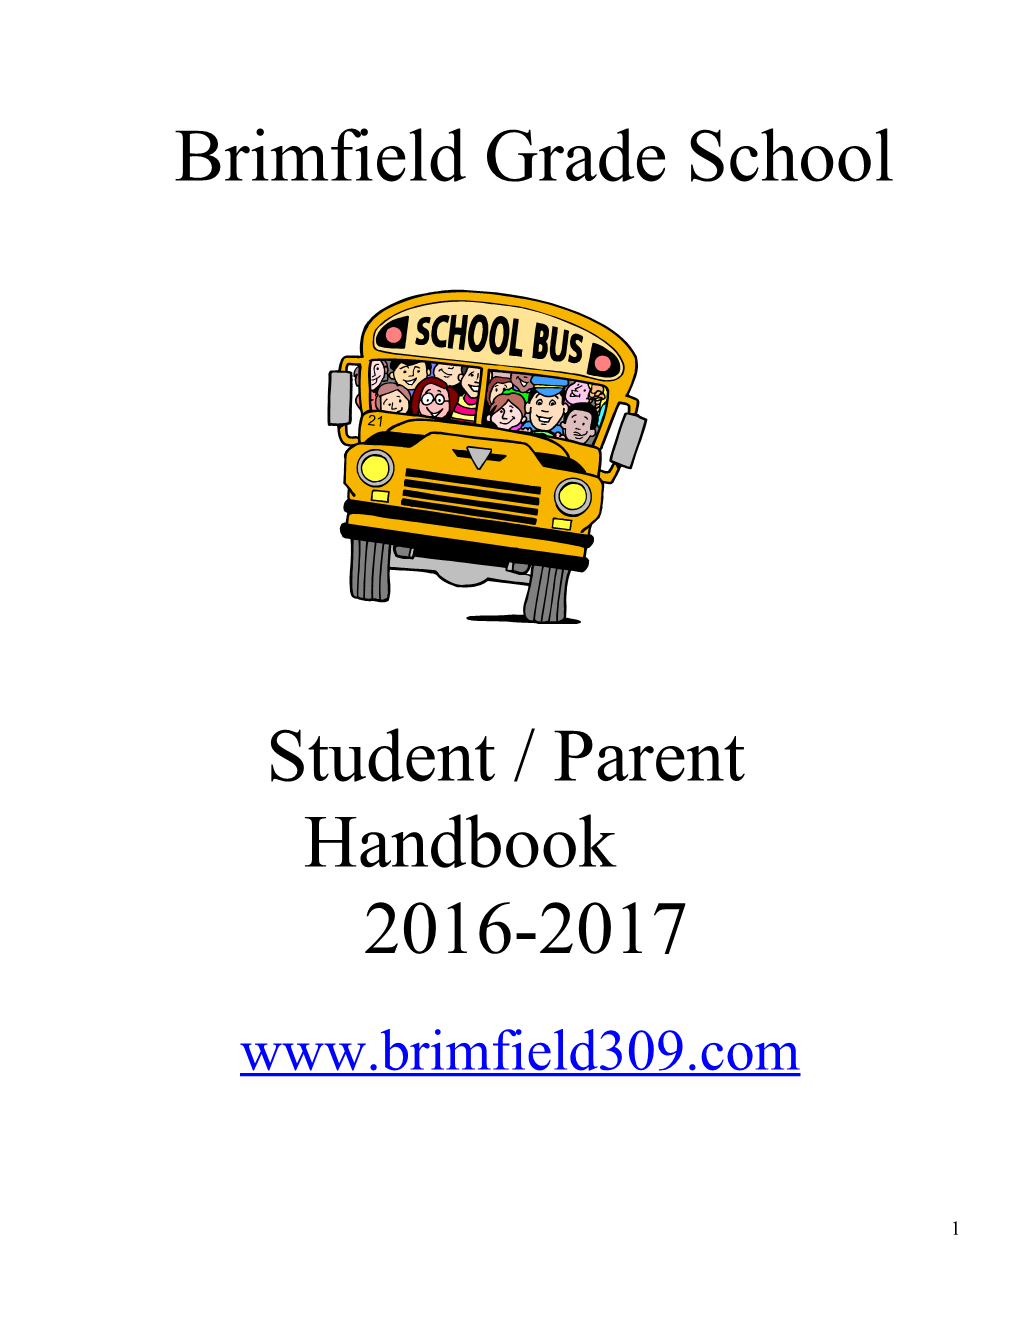 Brimfield Grade School Mission Statement